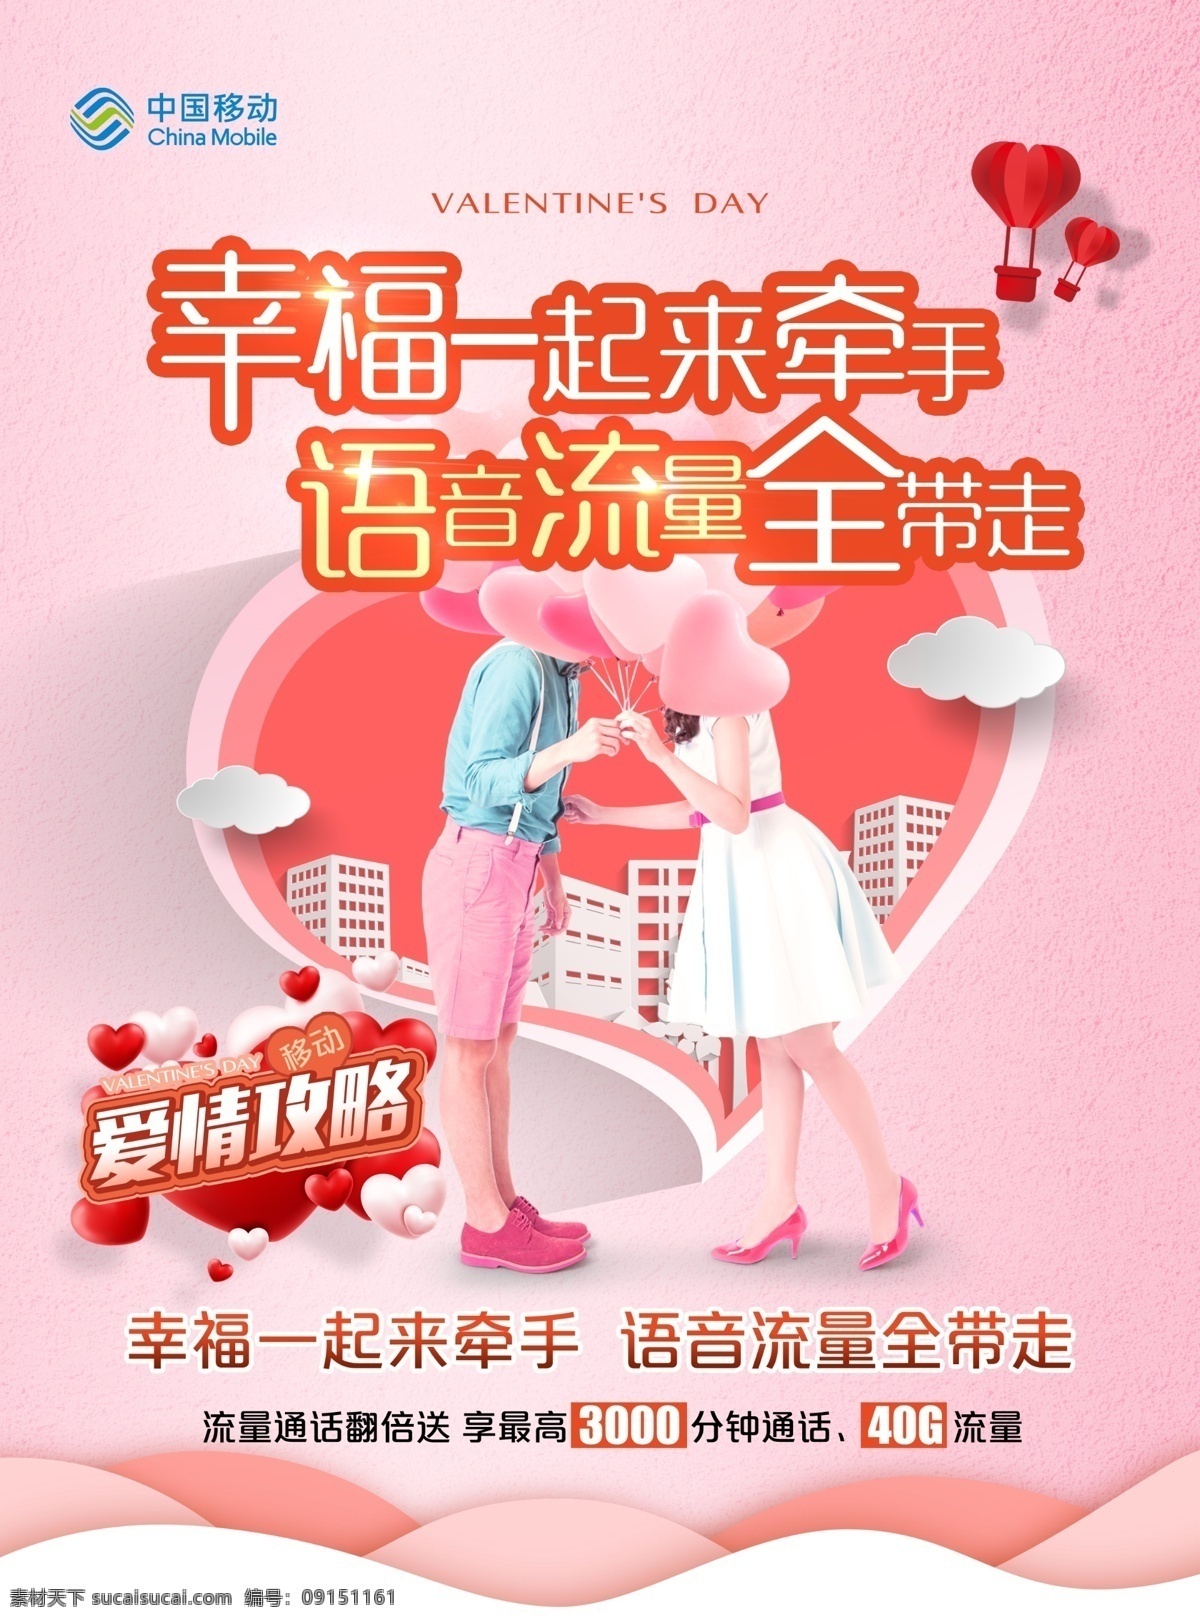 中国移动 业务 单 页 移动 流量 语音 爱情 牵手 单页 海报 分层